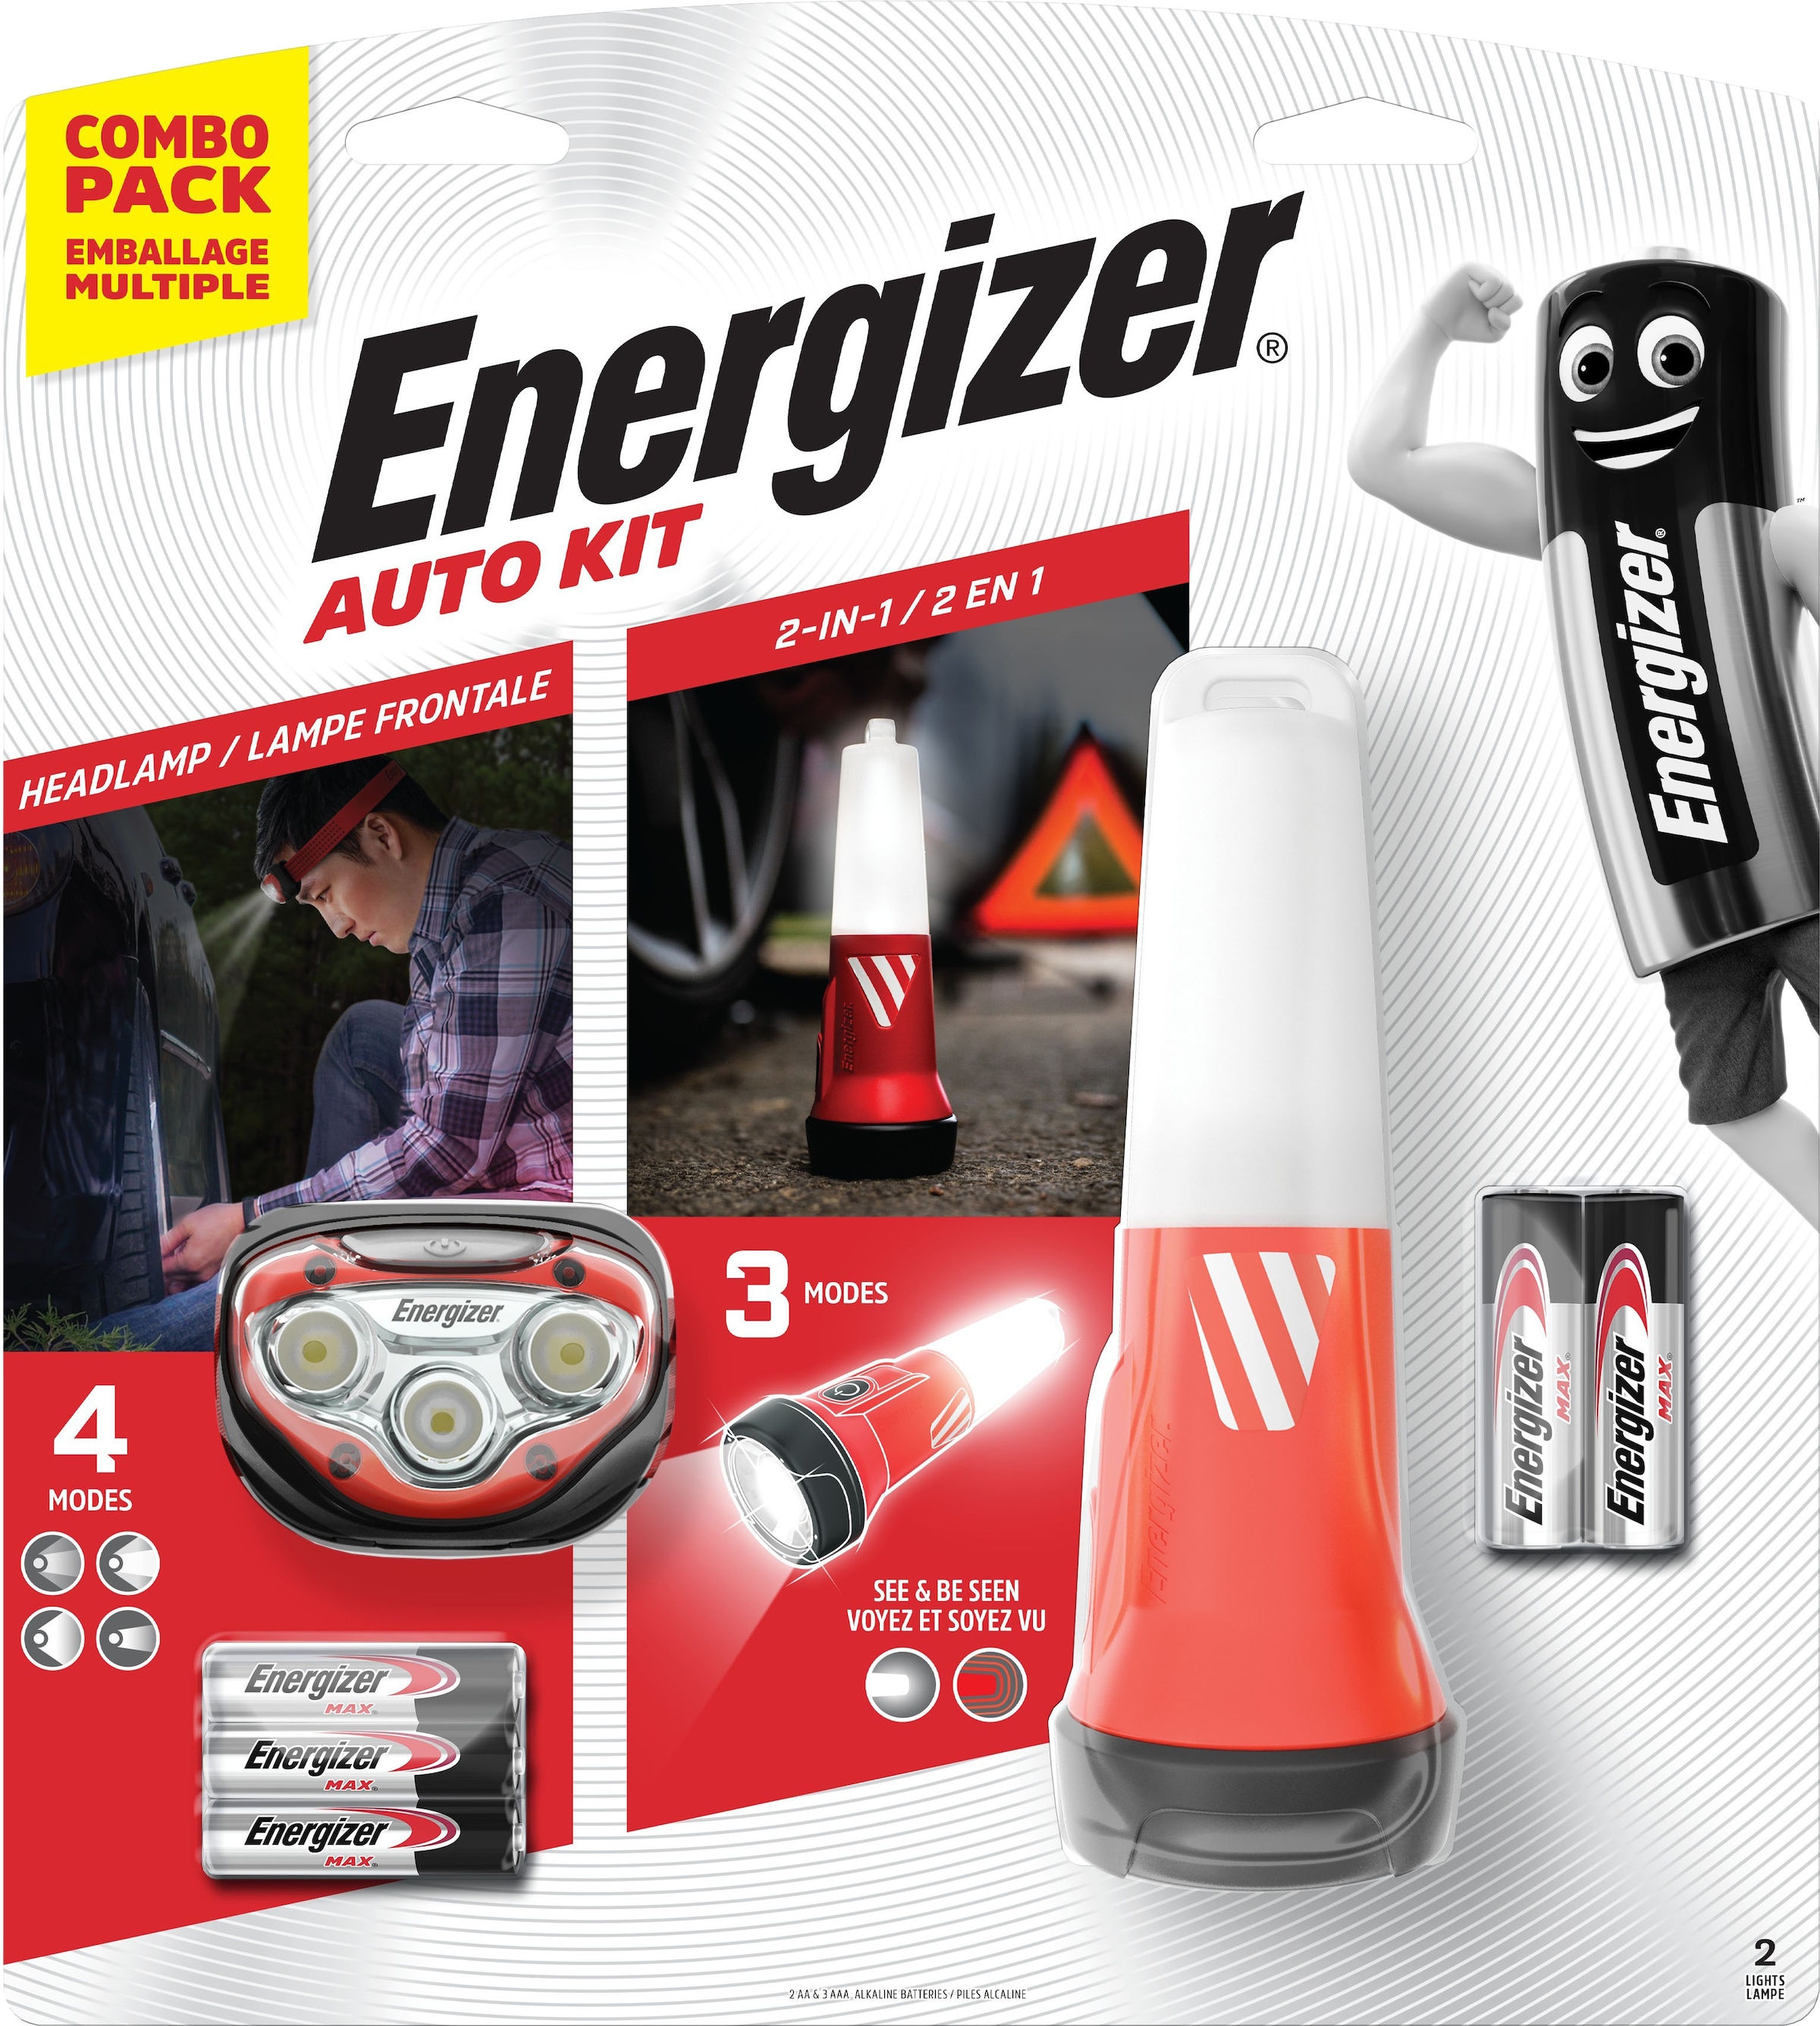 »Auto Energizer 2in1 Kit zu Preisen günstigen (Headlight+ Notfalllicht)« kaufen Notfall | Jelmoli-Versand Taschenlampe